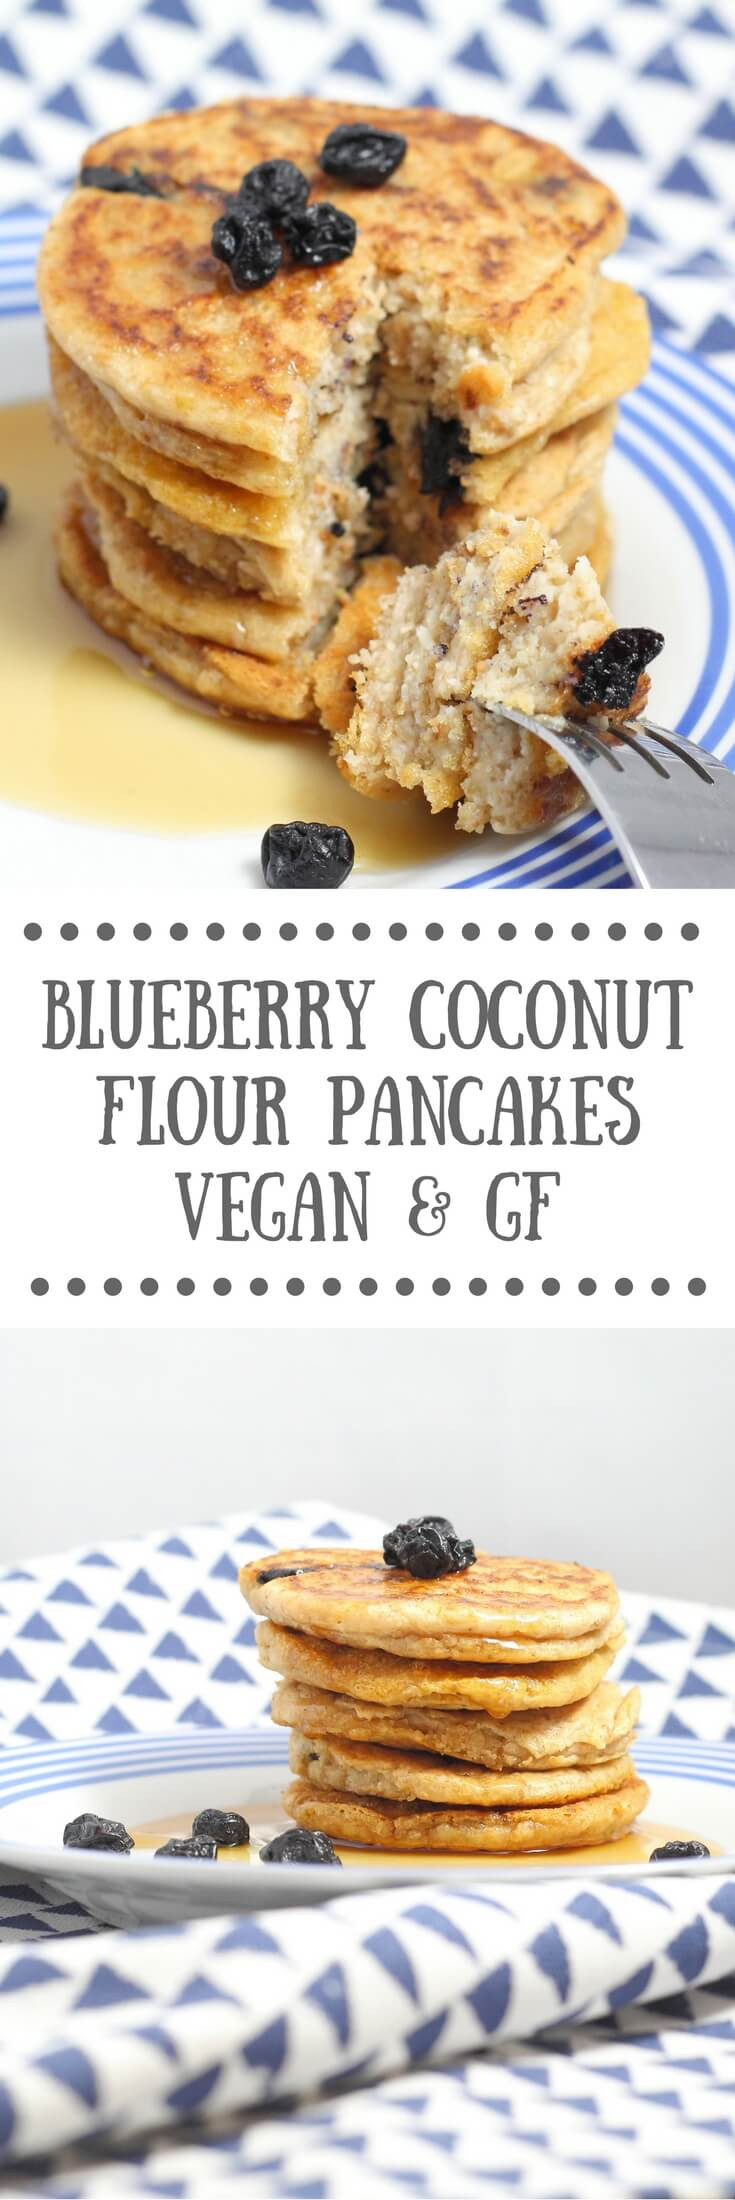 Vegan Coconut Flour Recipes
 Blueberry Coconut Flour Pancakes